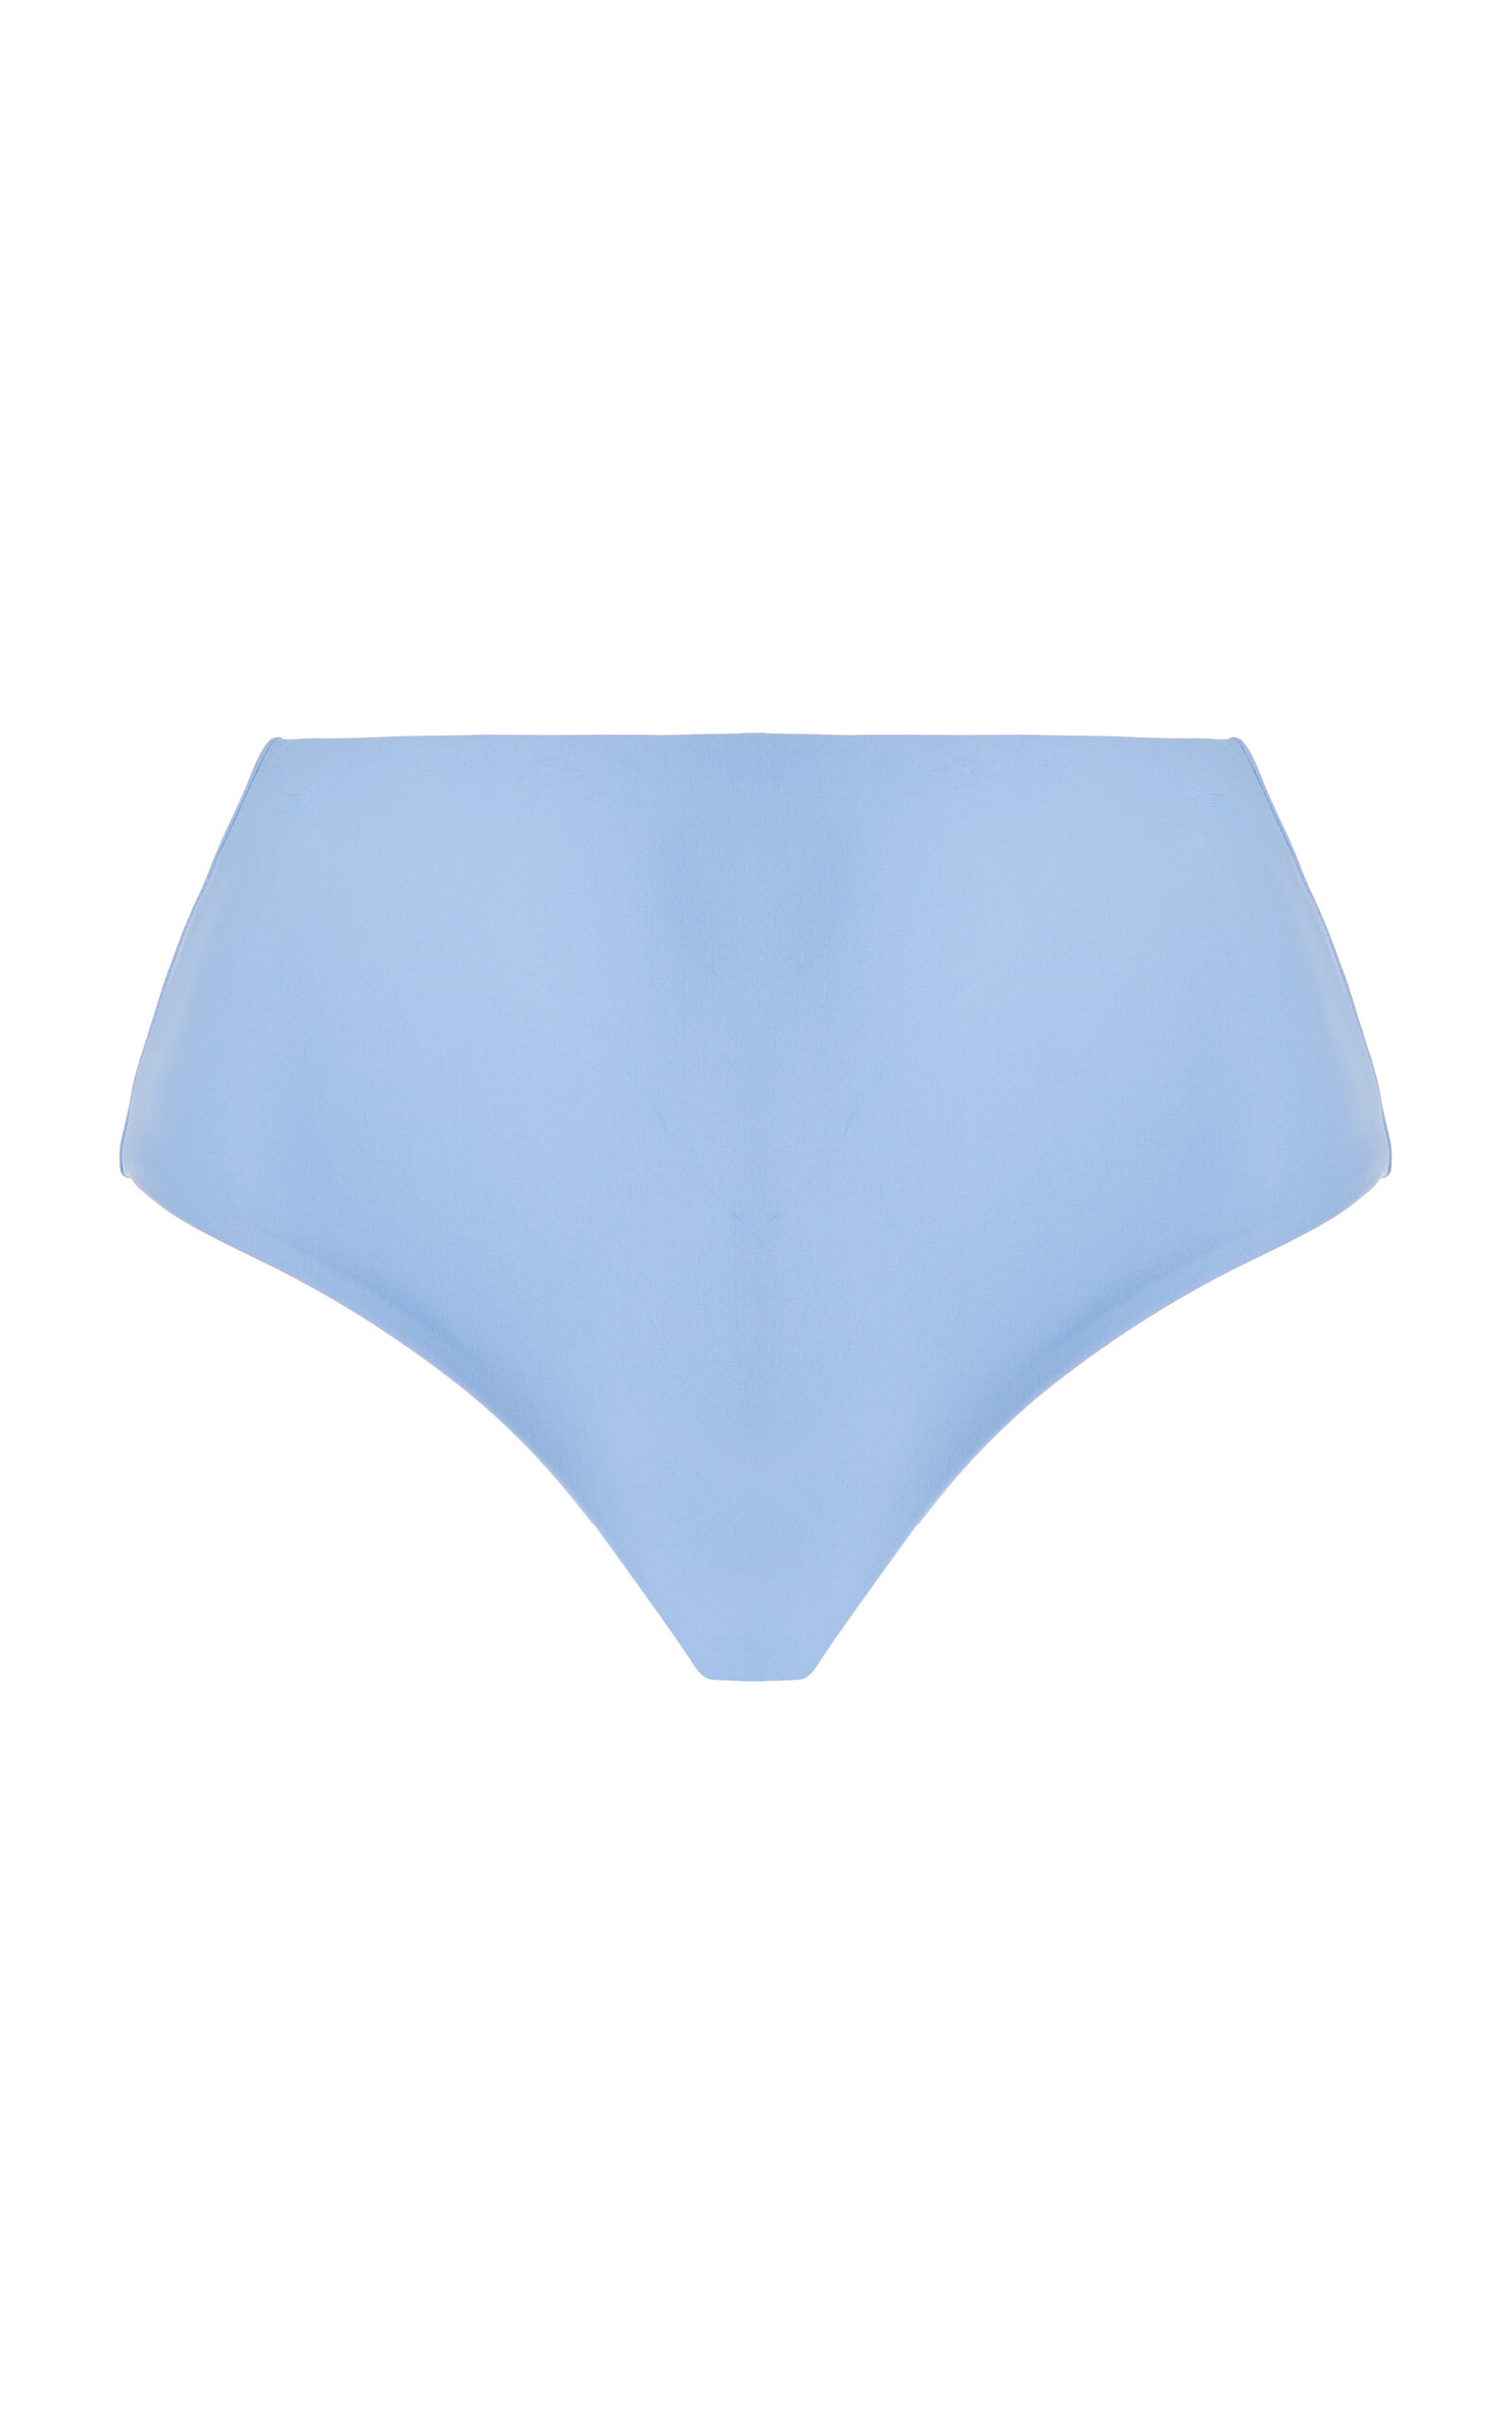 JADE SWIM - Bound High-Waisted Bikini Bottom - Blue - S - Moda Operandi